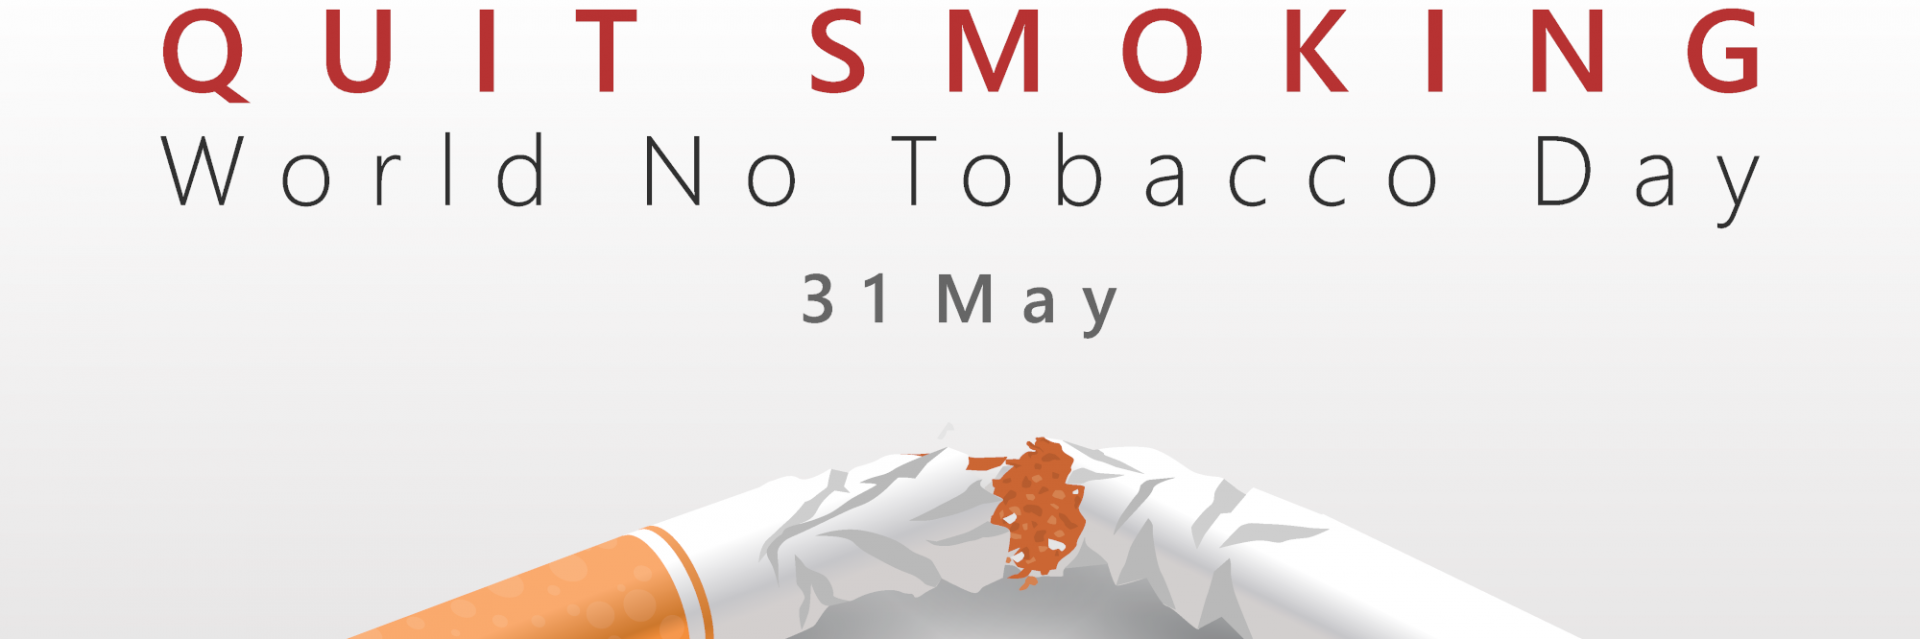 UN Ethiopia kicks off World No Tobacco Day campaign